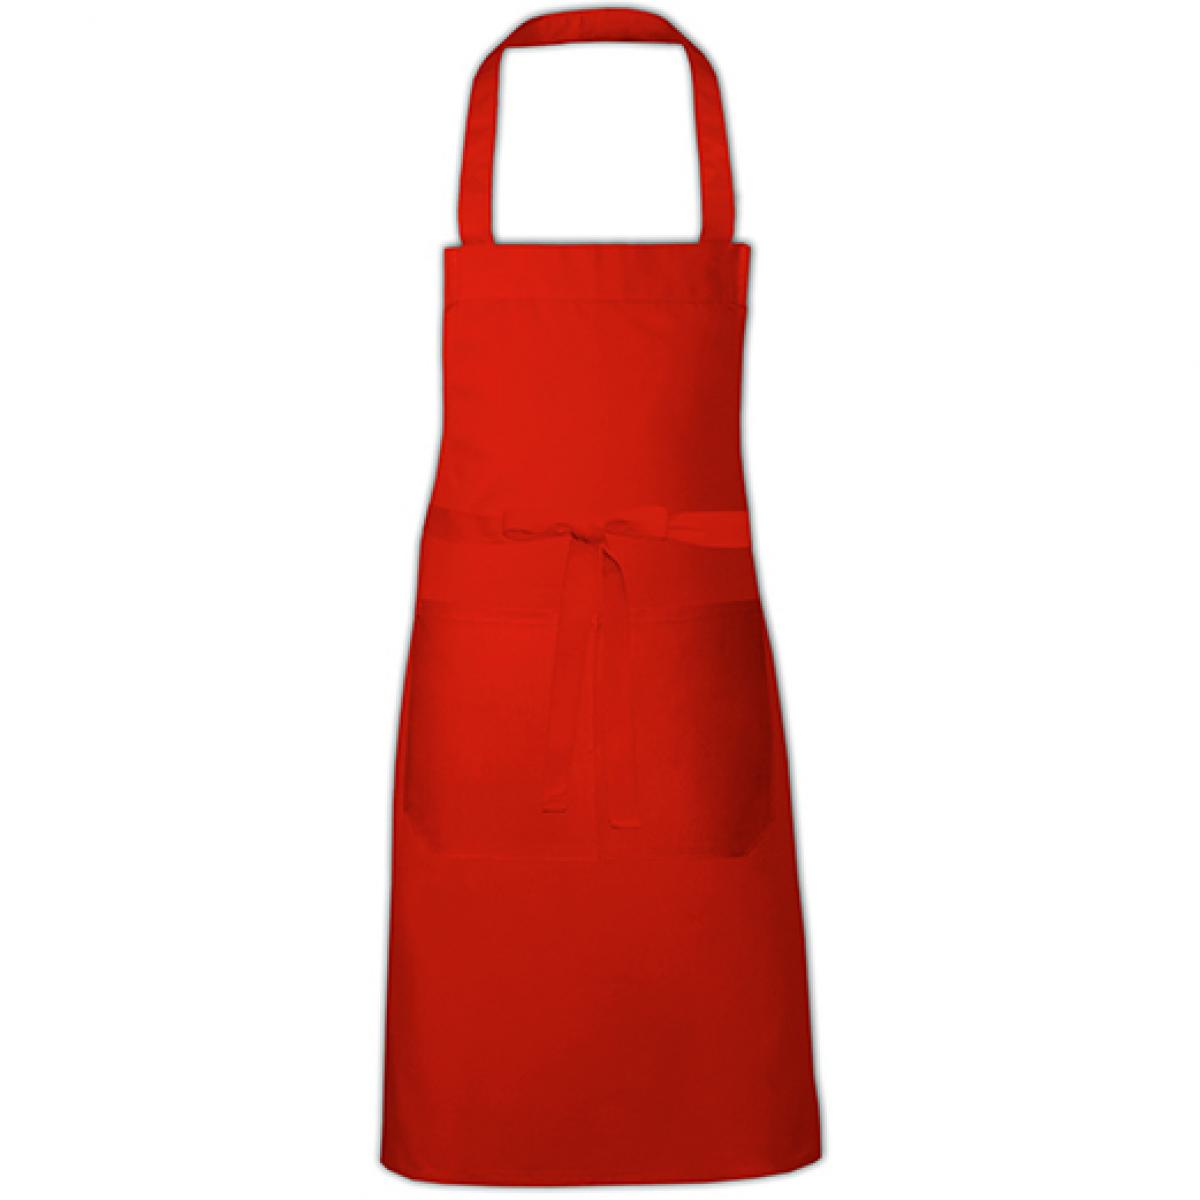 Hersteller: Link Kitchen Wear Herstellernummer: HS8073EU Artikelbezeichnung: Hobby Apron - EU Production - Kochschürze - Waschbar bis 60C Farbe: Red